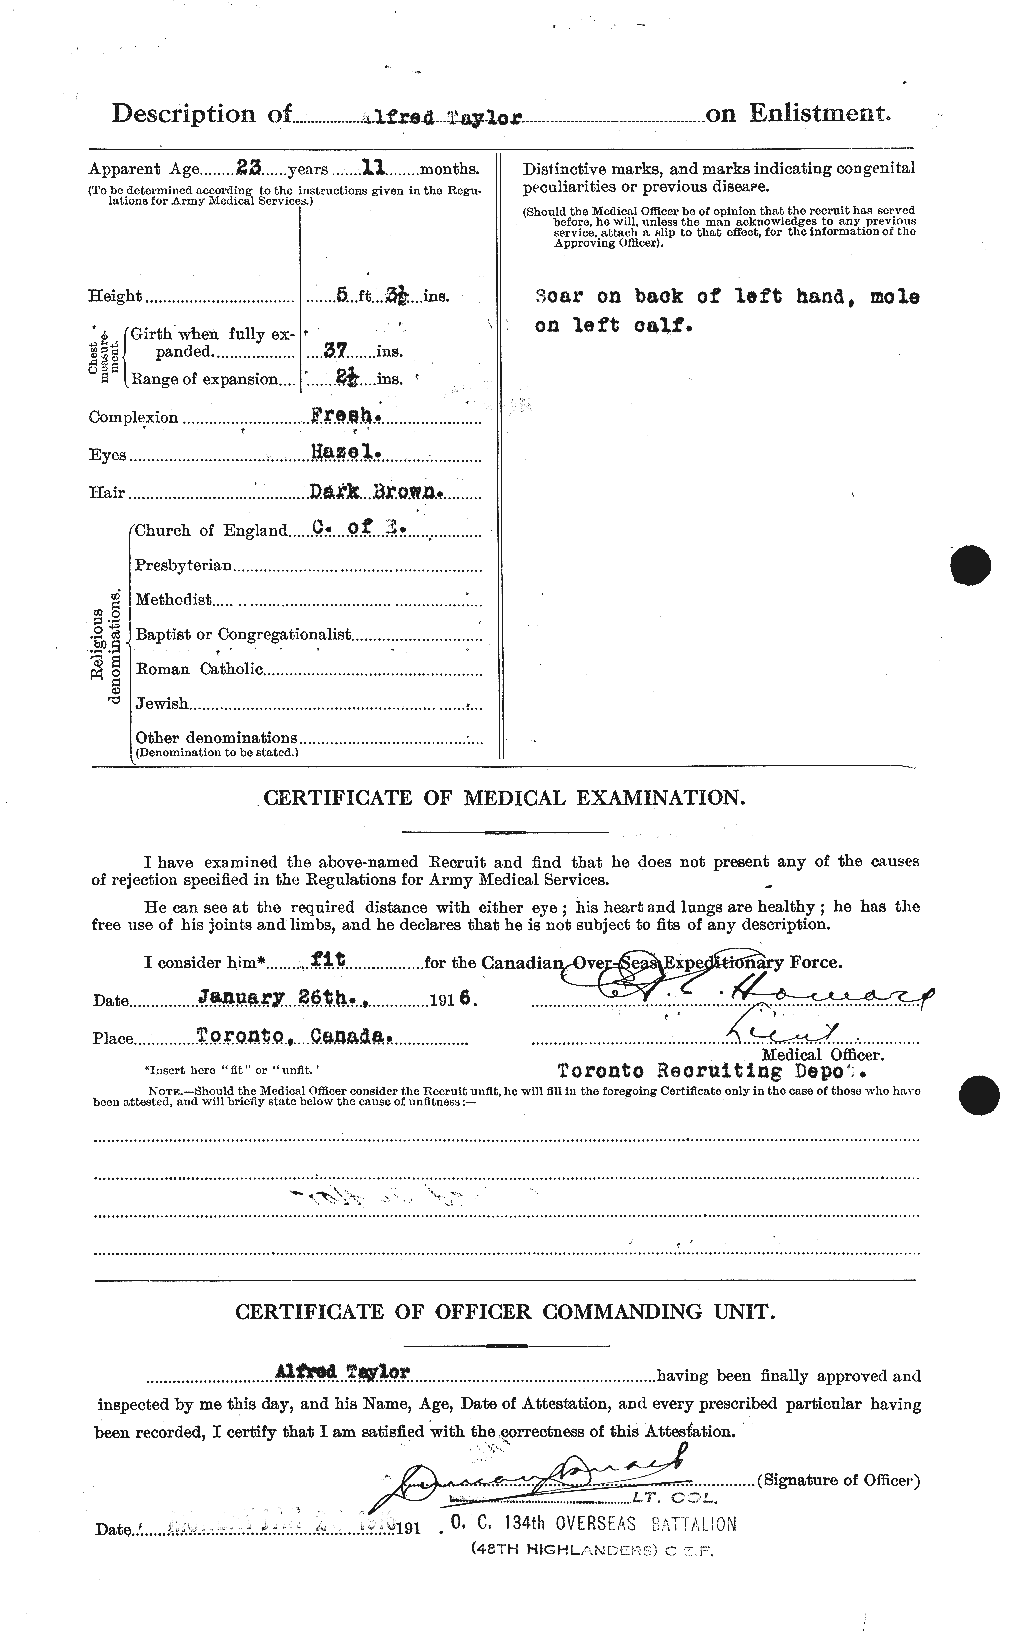 Dossiers du Personnel de la Première Guerre mondiale - CEC 626166b